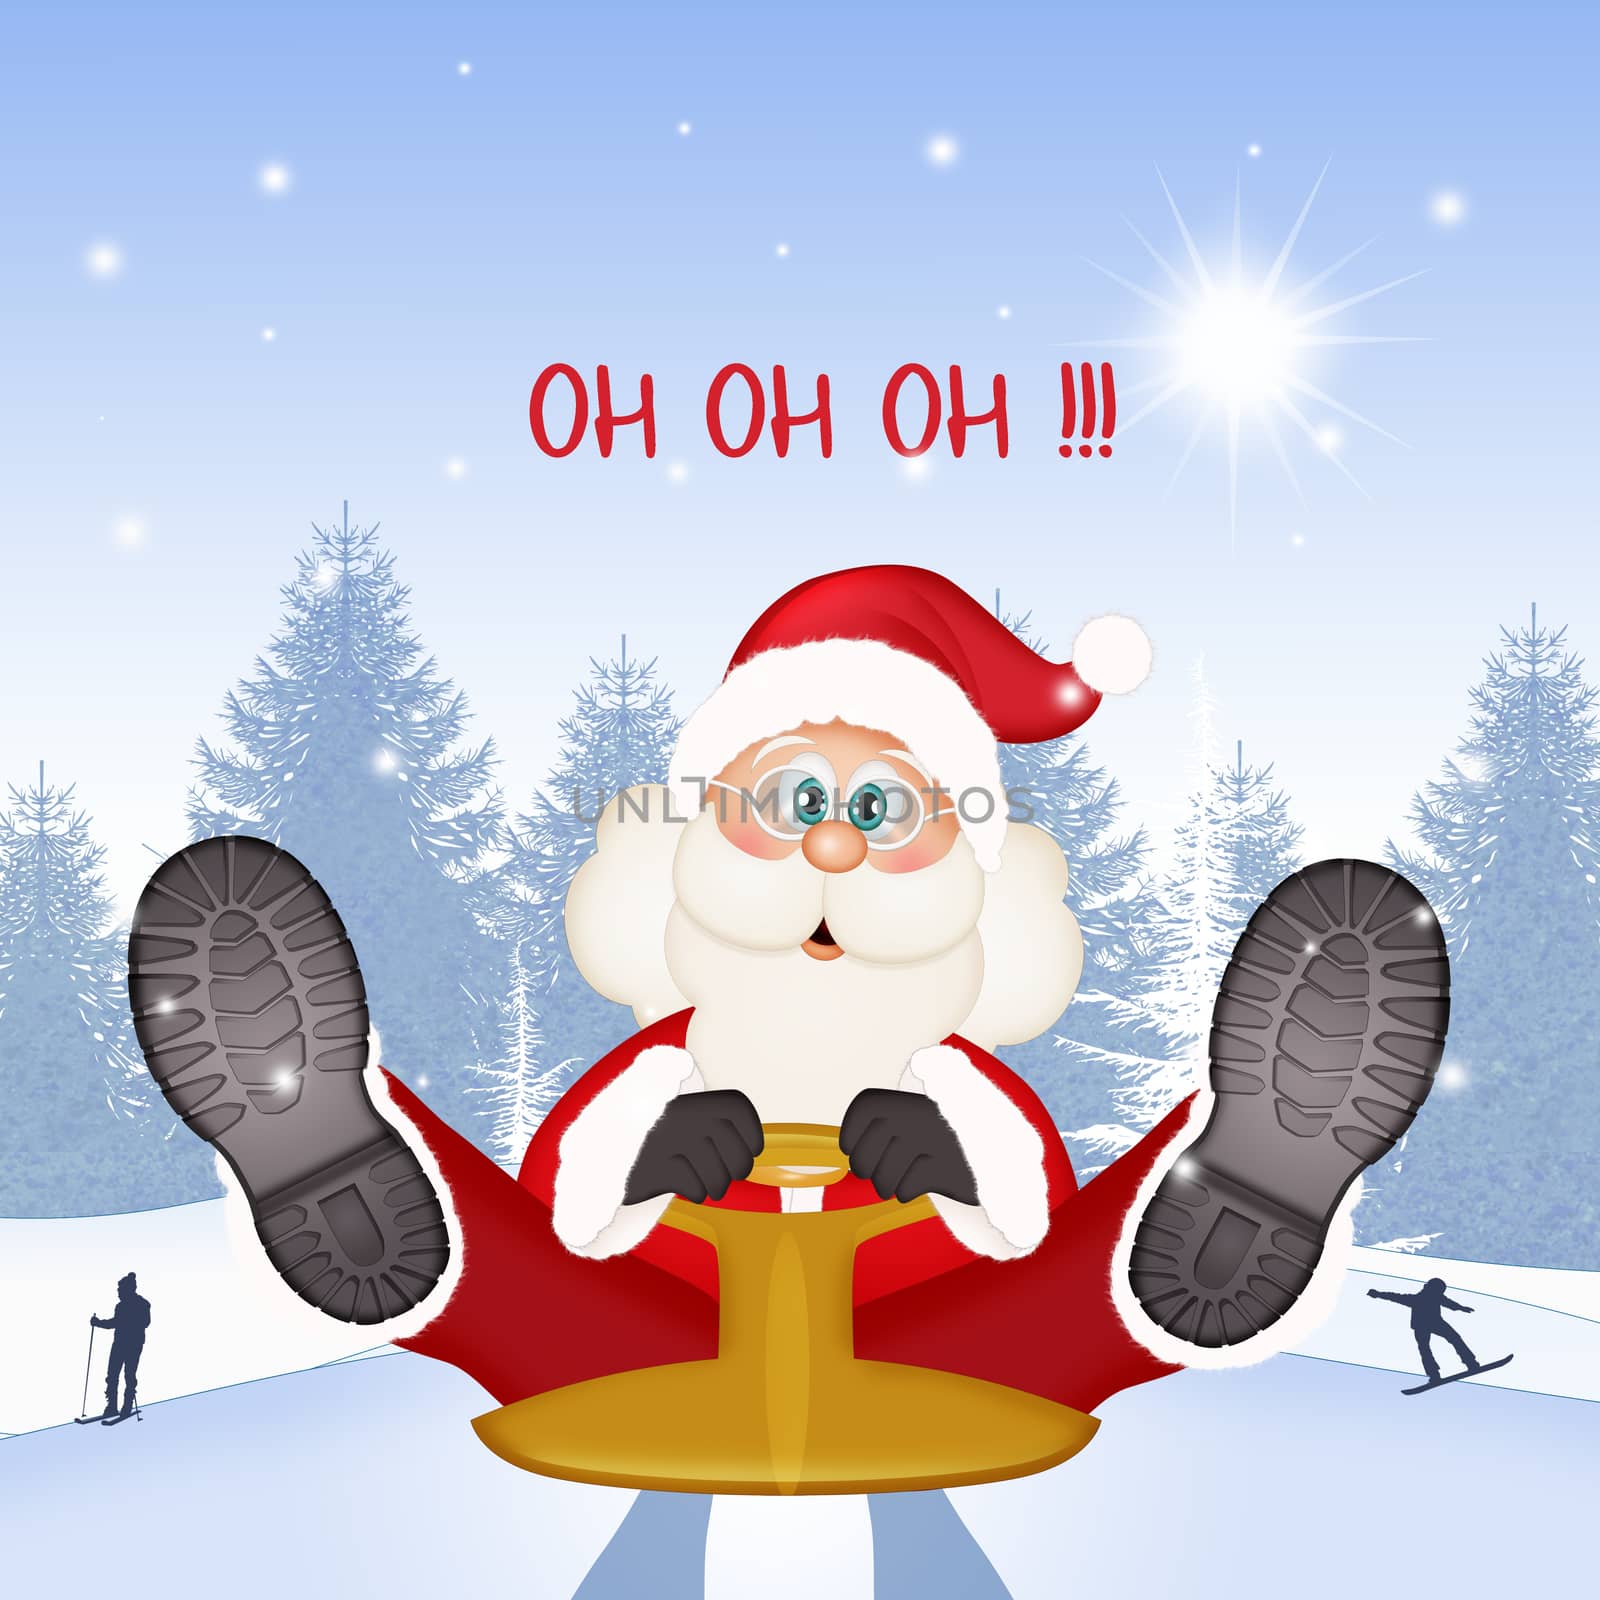 Santa Claus oh oh oh! by adrenalina